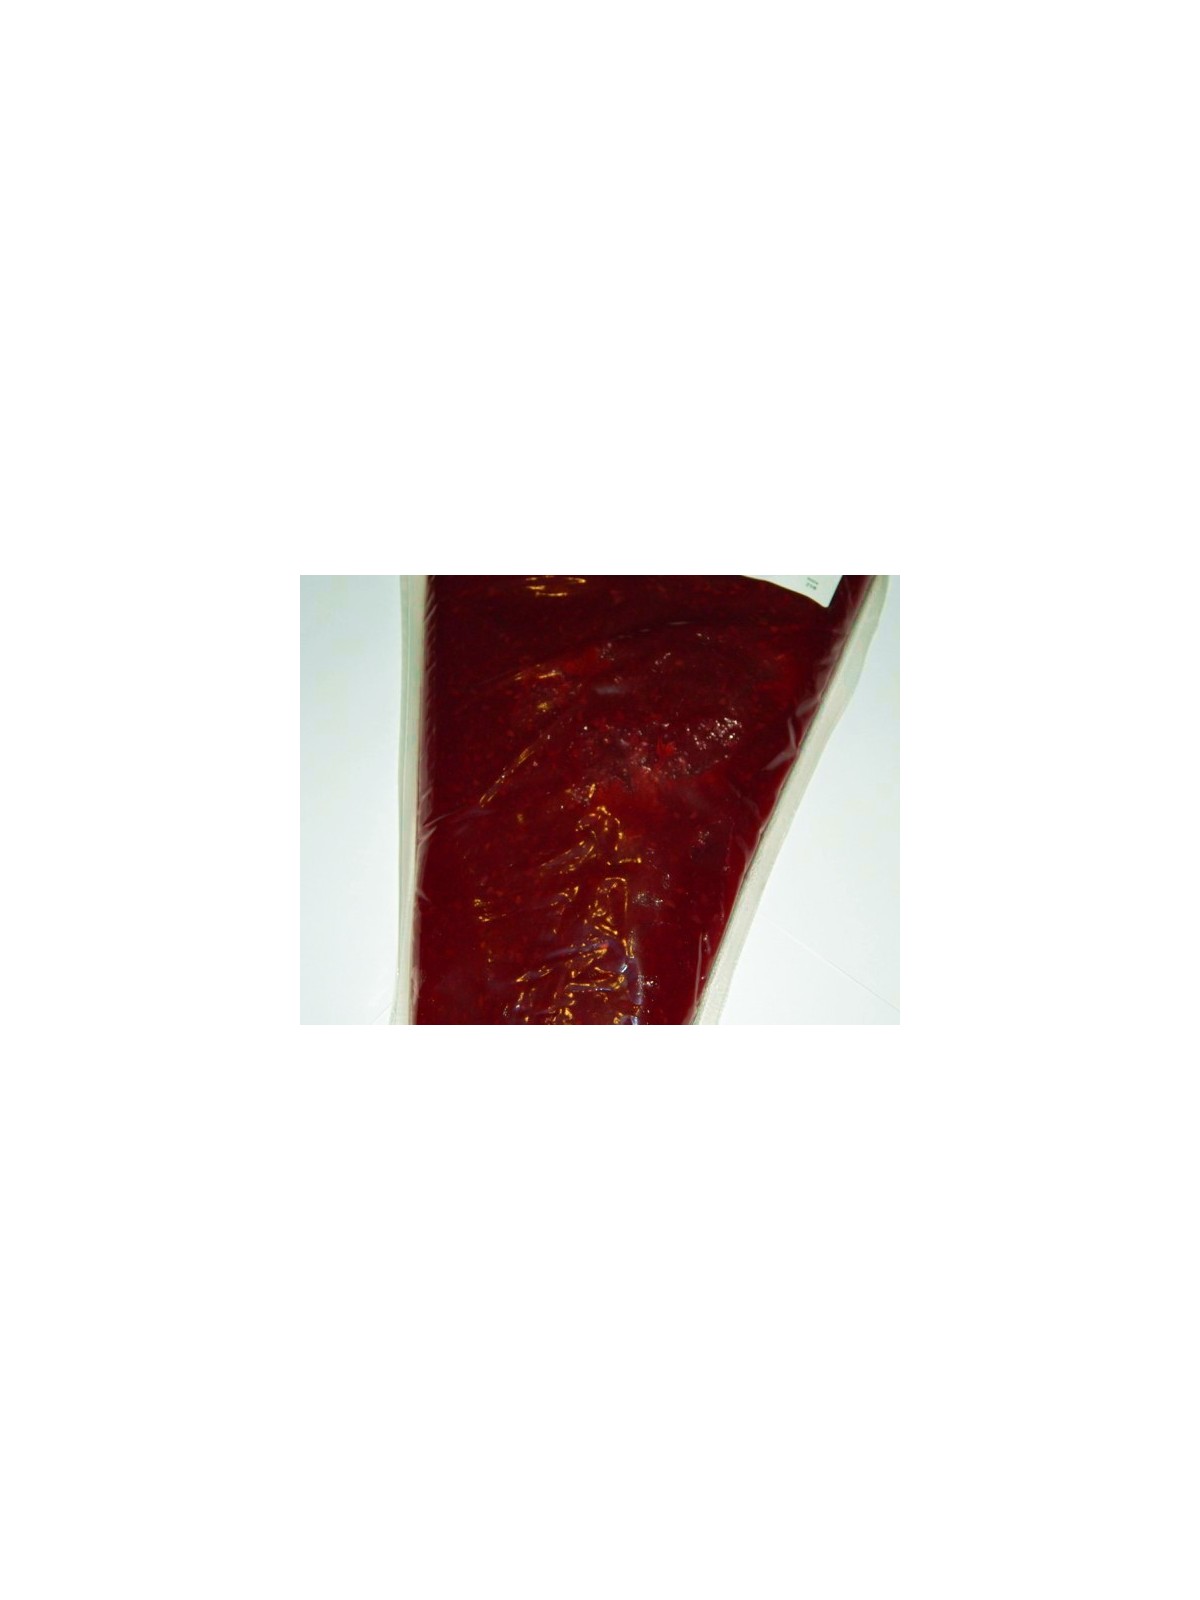 Himbeer - Gell - Fruchtfüllung - 1kg